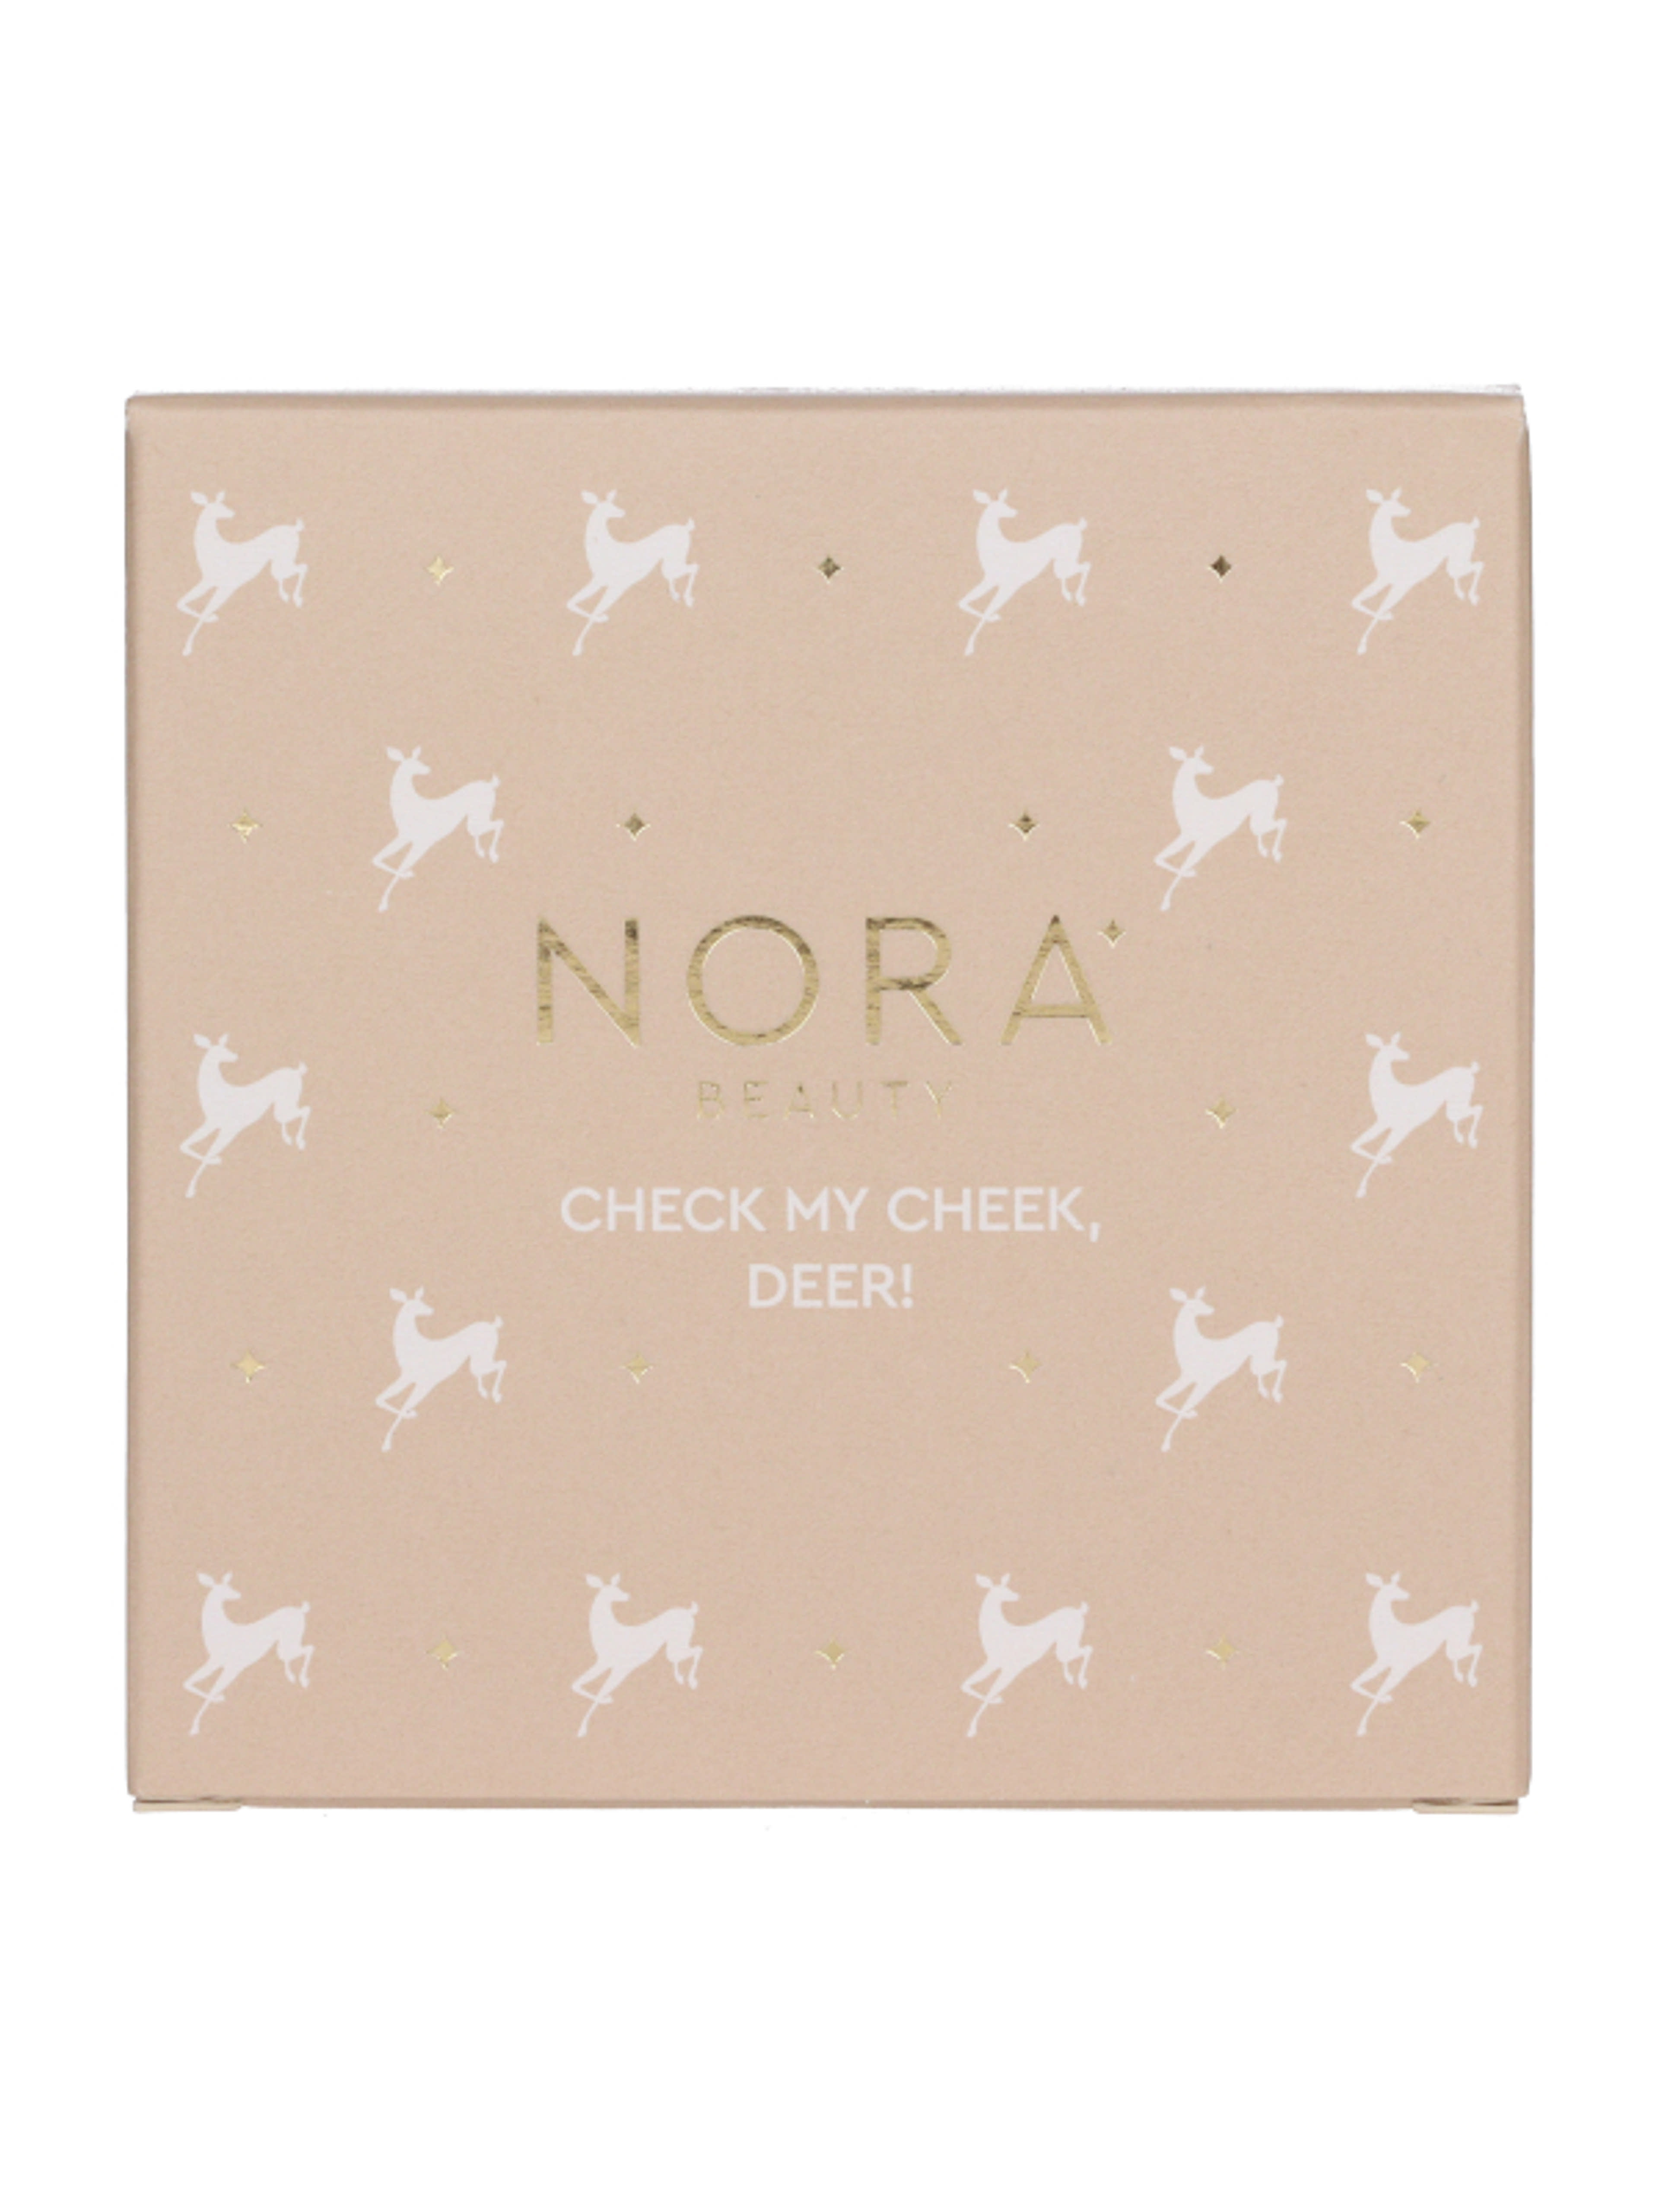 Nora Beauty pirosító, bronzosító és highlighter/02 Warm - 1 db